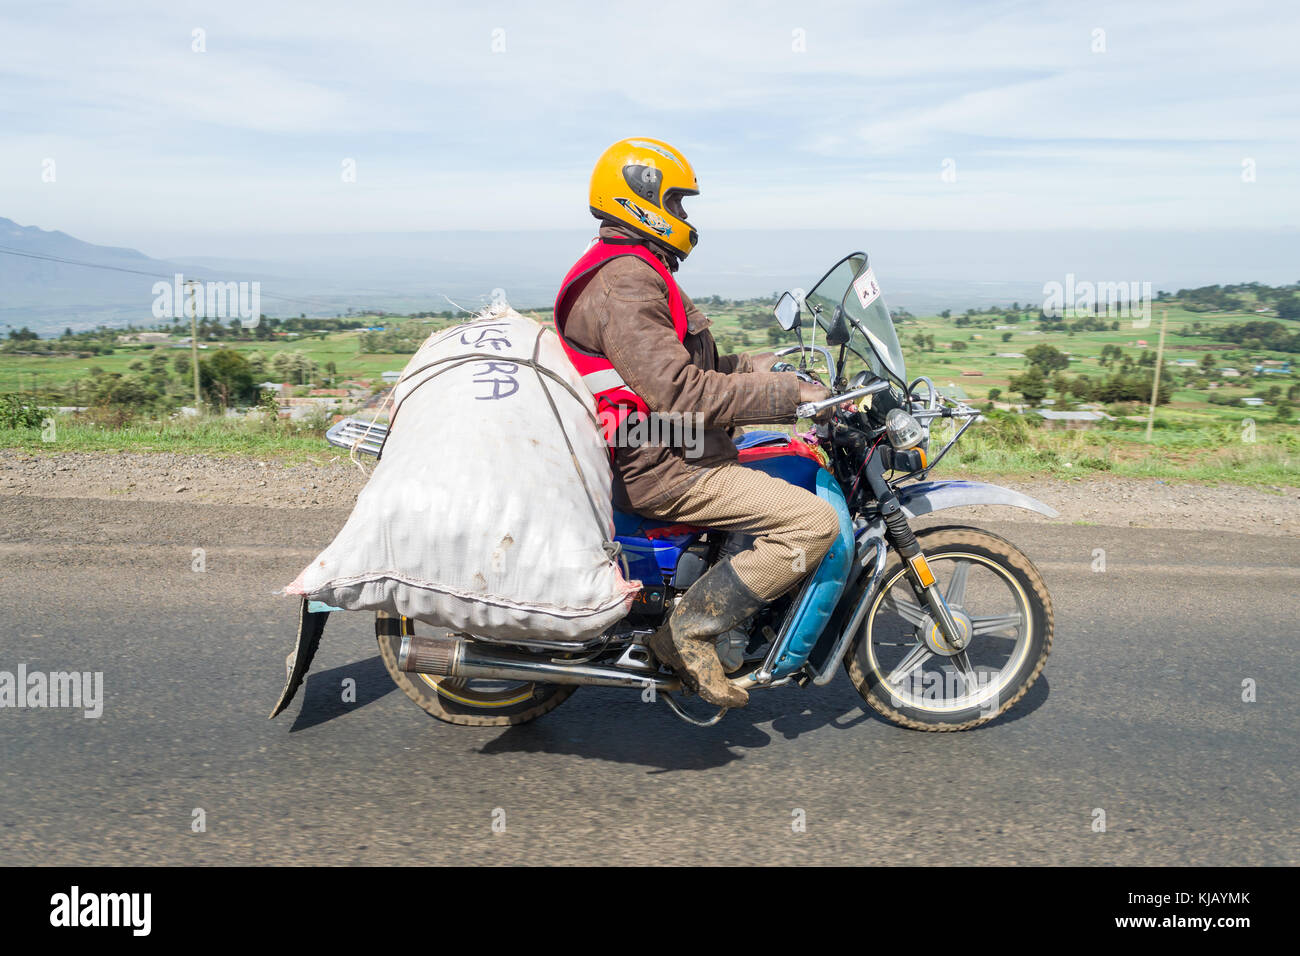 Un africano uomo alla guida di una moto con un sacco di grandi dimensioni delle merci assicurate al retro, Kenya, Africa orientale Foto Stock